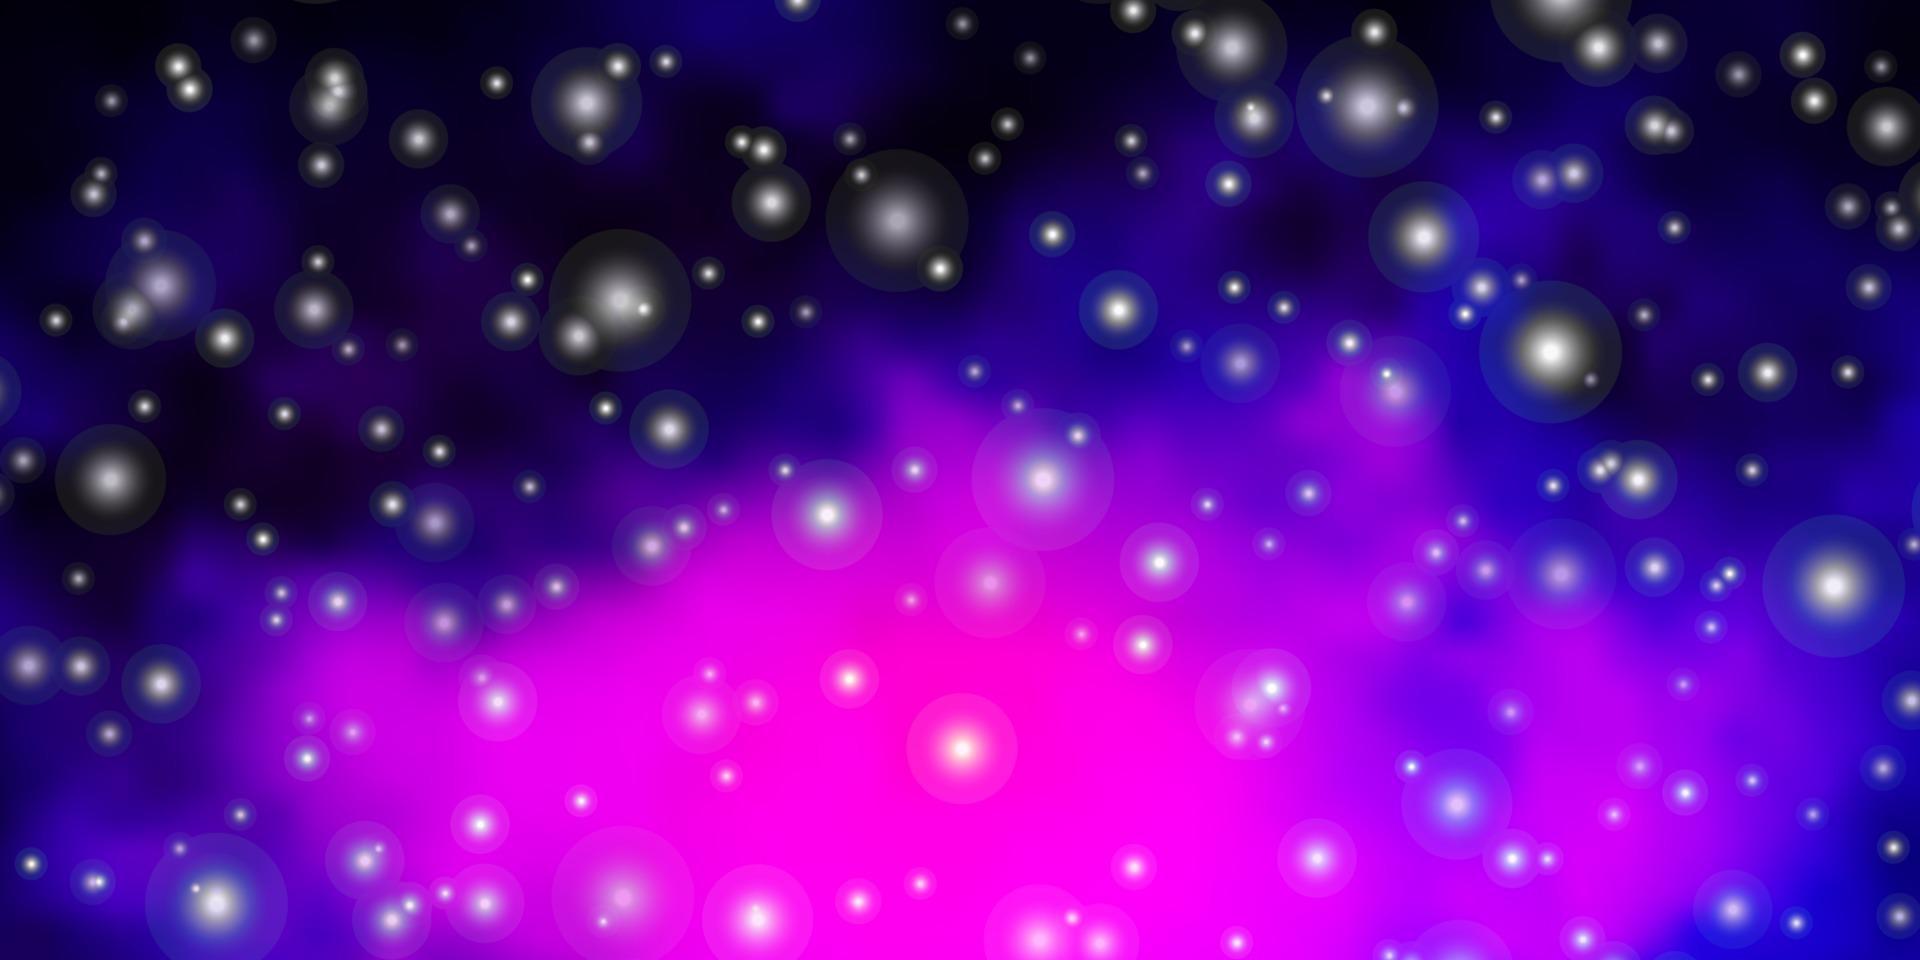 trama vettoriale rosa scuro, blu con bellissime stelle.